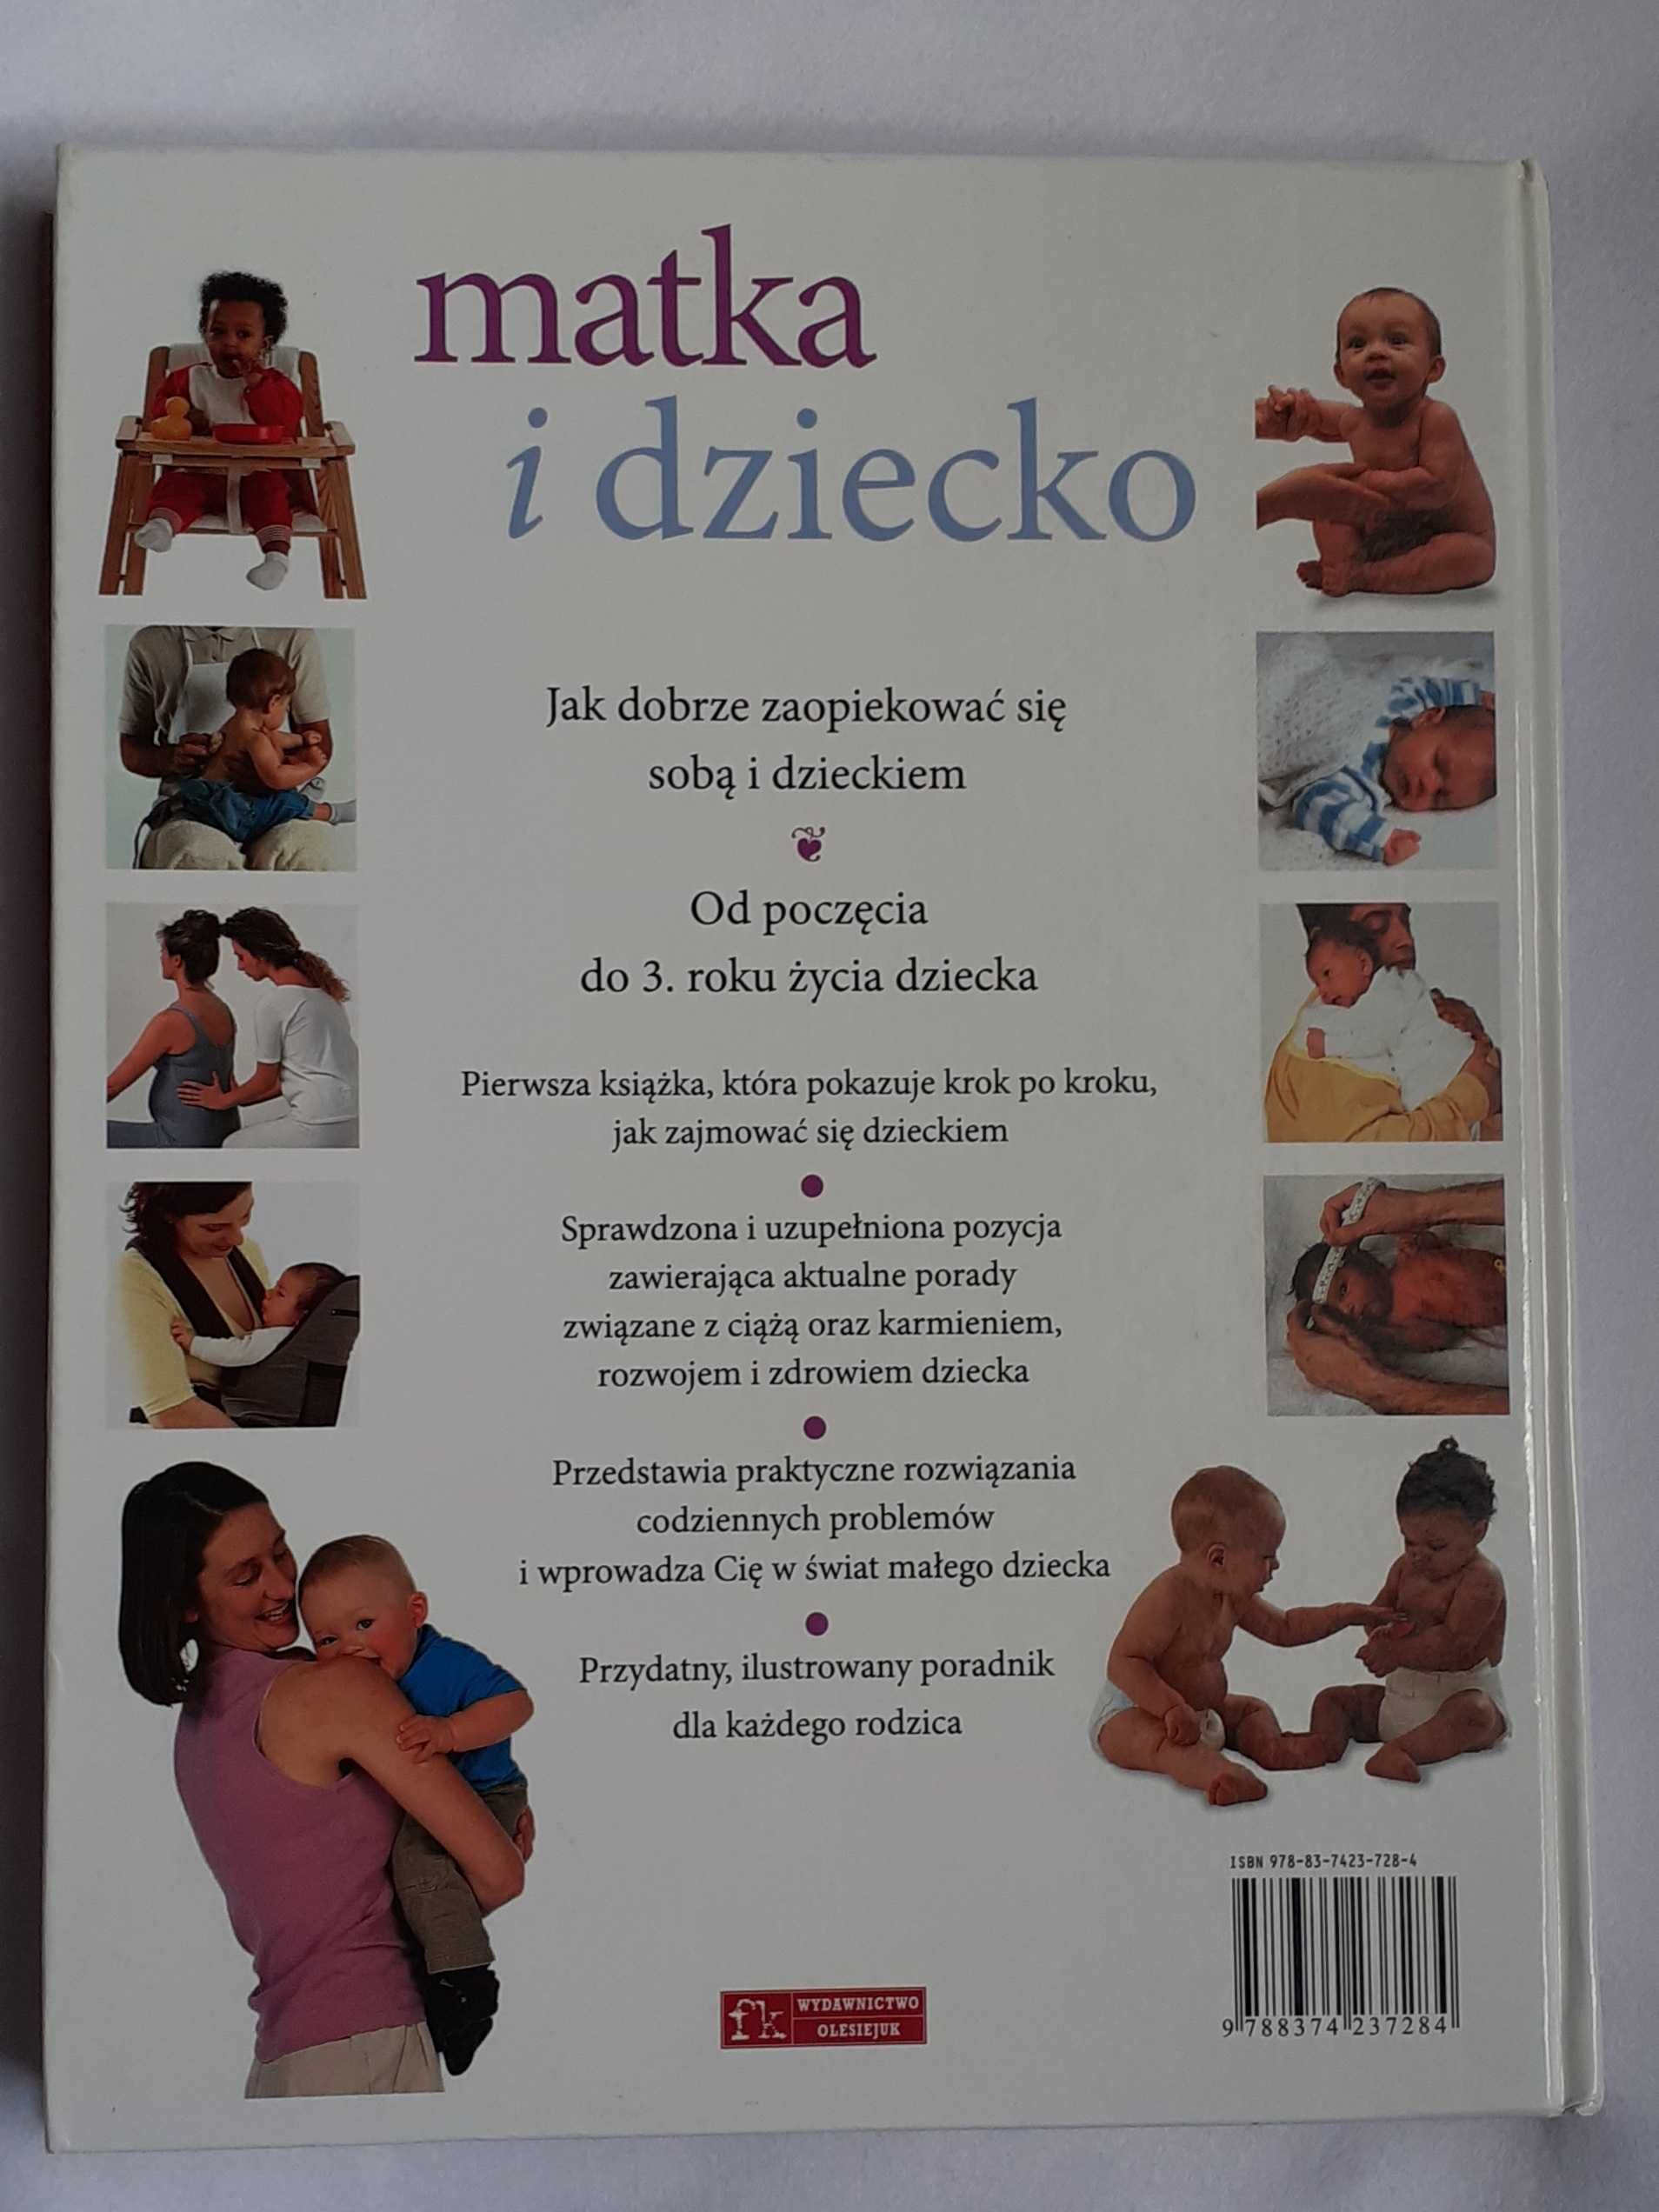 NOWA książka "Matka i dziecko" Elizabeth Fenwick